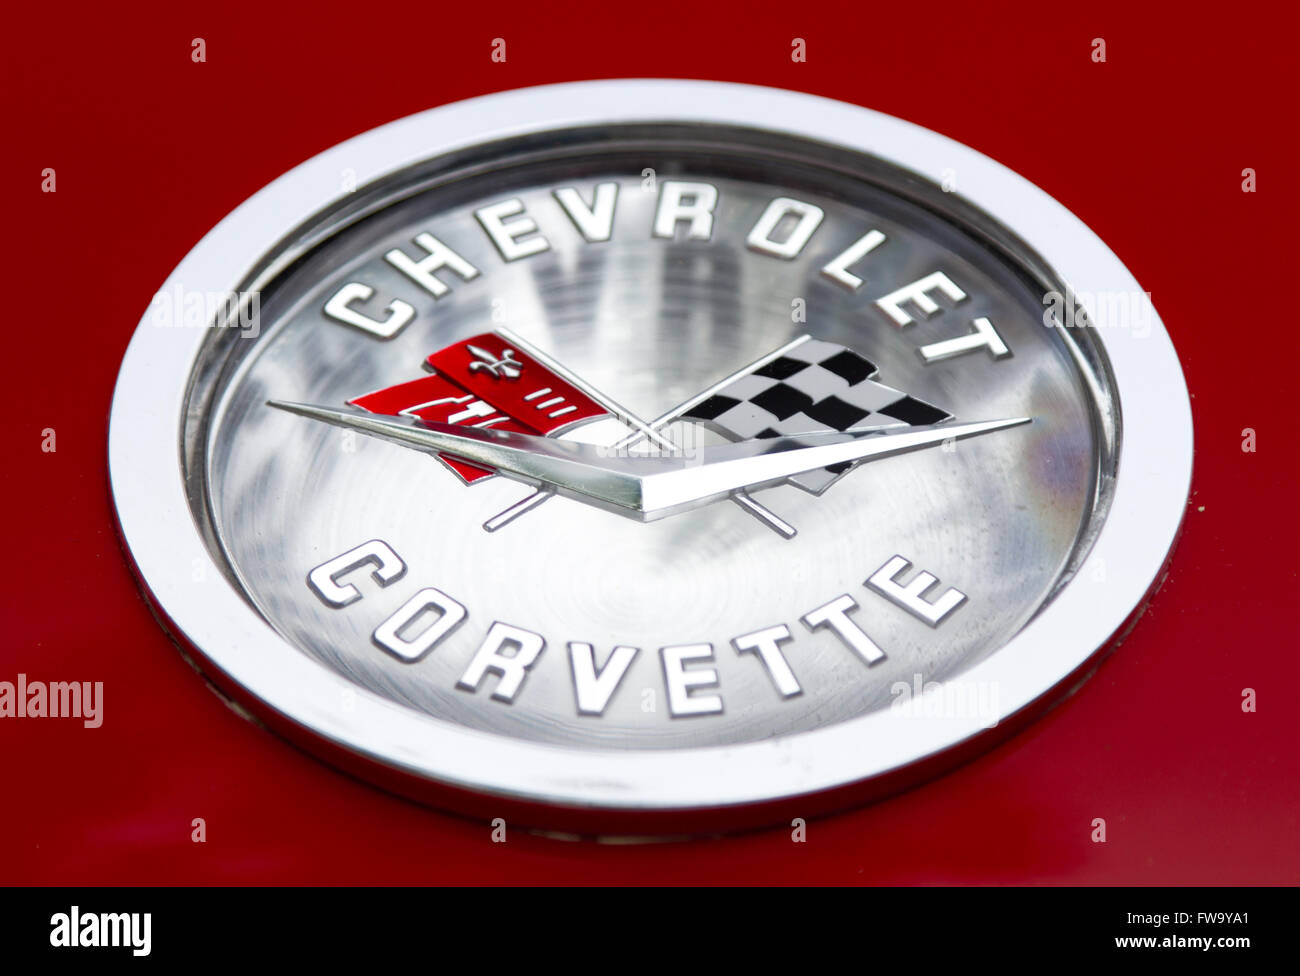 Old Chevrolet Corvette logo. Stock Photo